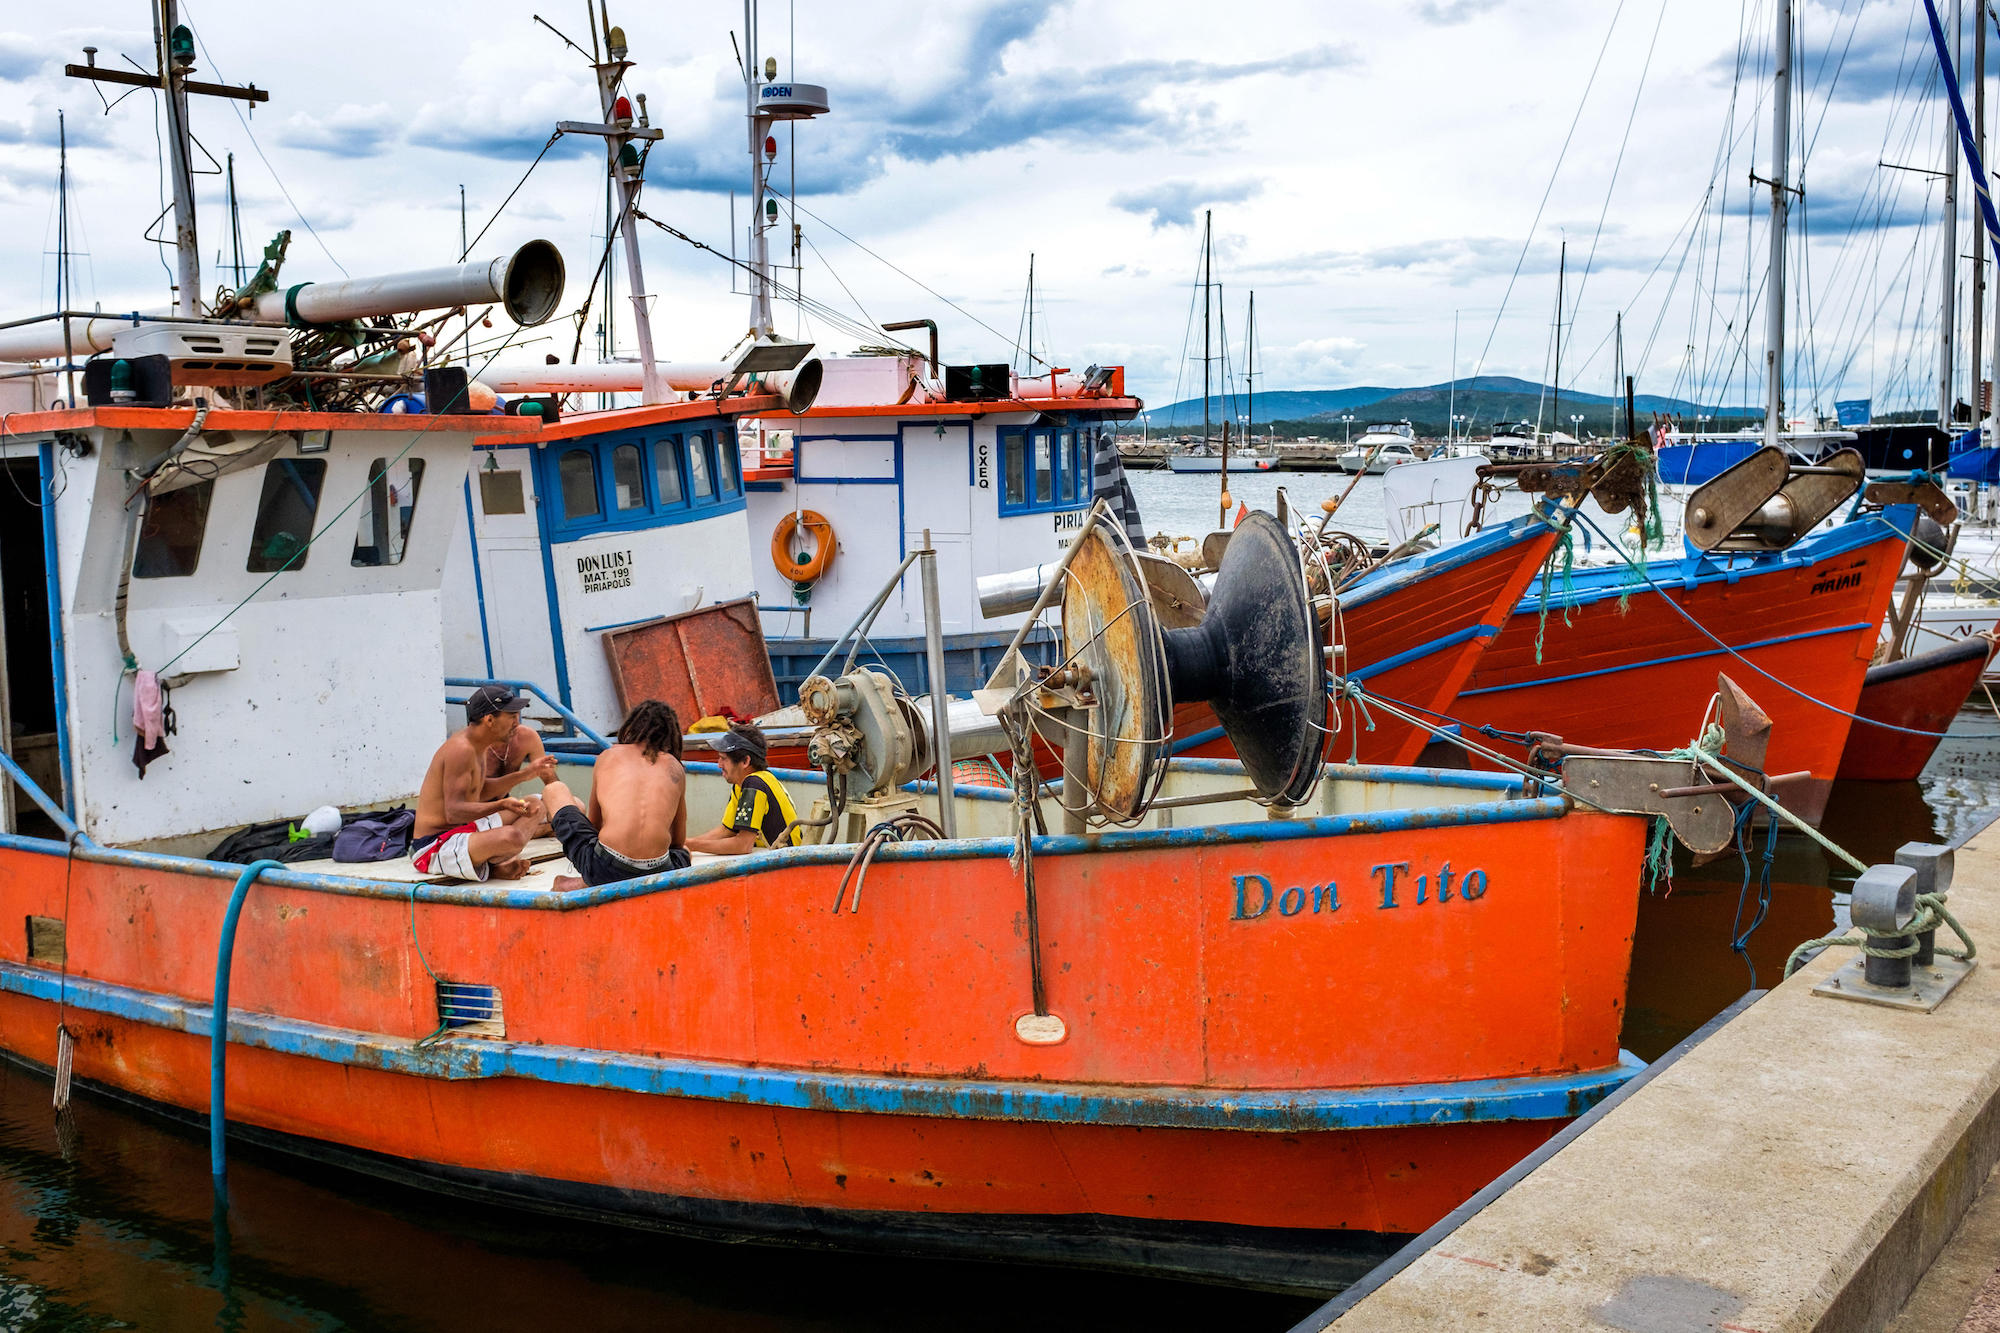 Uruguai, Piriápolis: Situado no departamento de Maldonado, é um dos principais balneários do país. Barcos de pesca tradicionais no porto